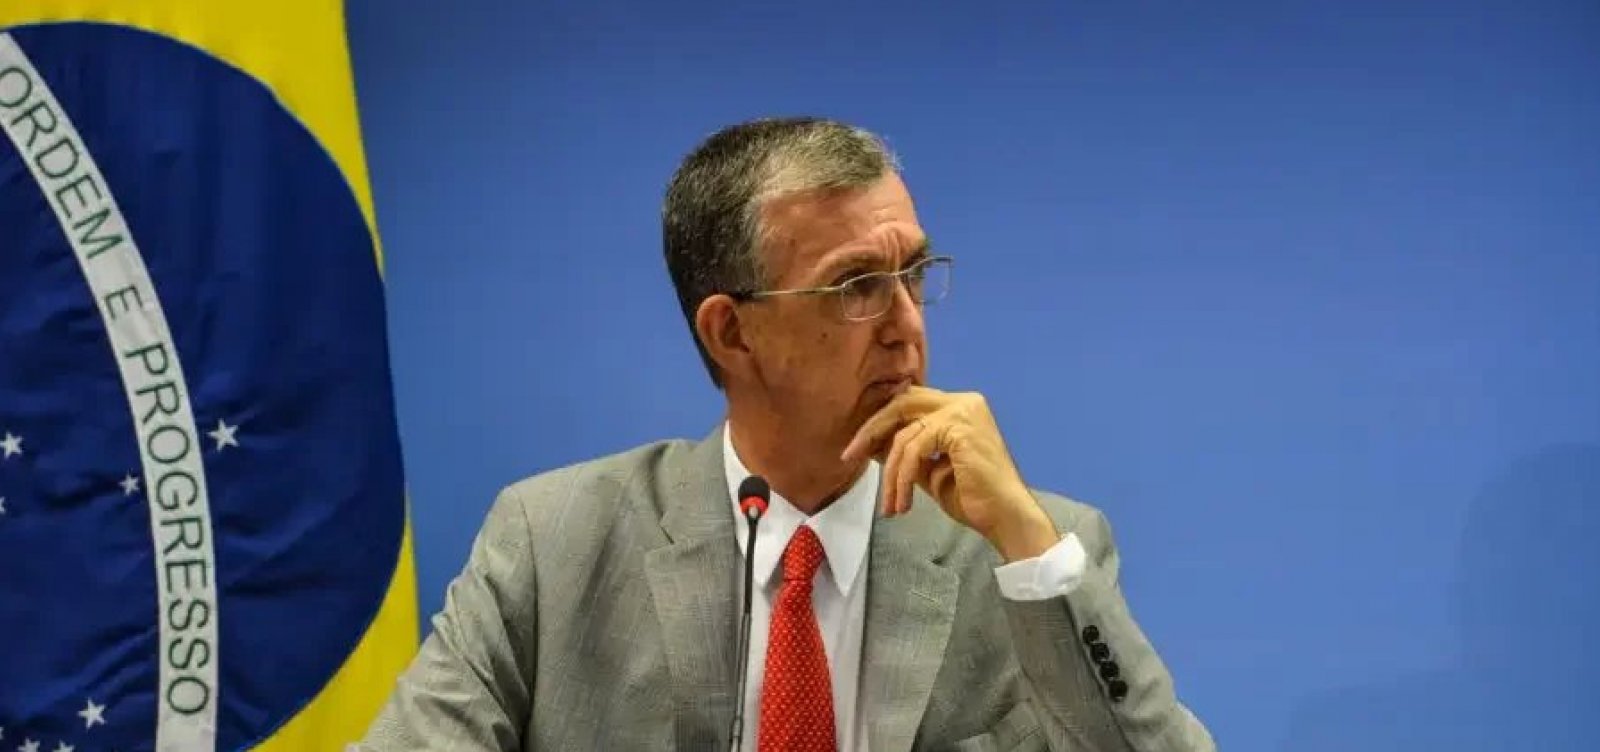 Embaixador Sérgio Danese é indicado como novo representante do Brasil na ONU